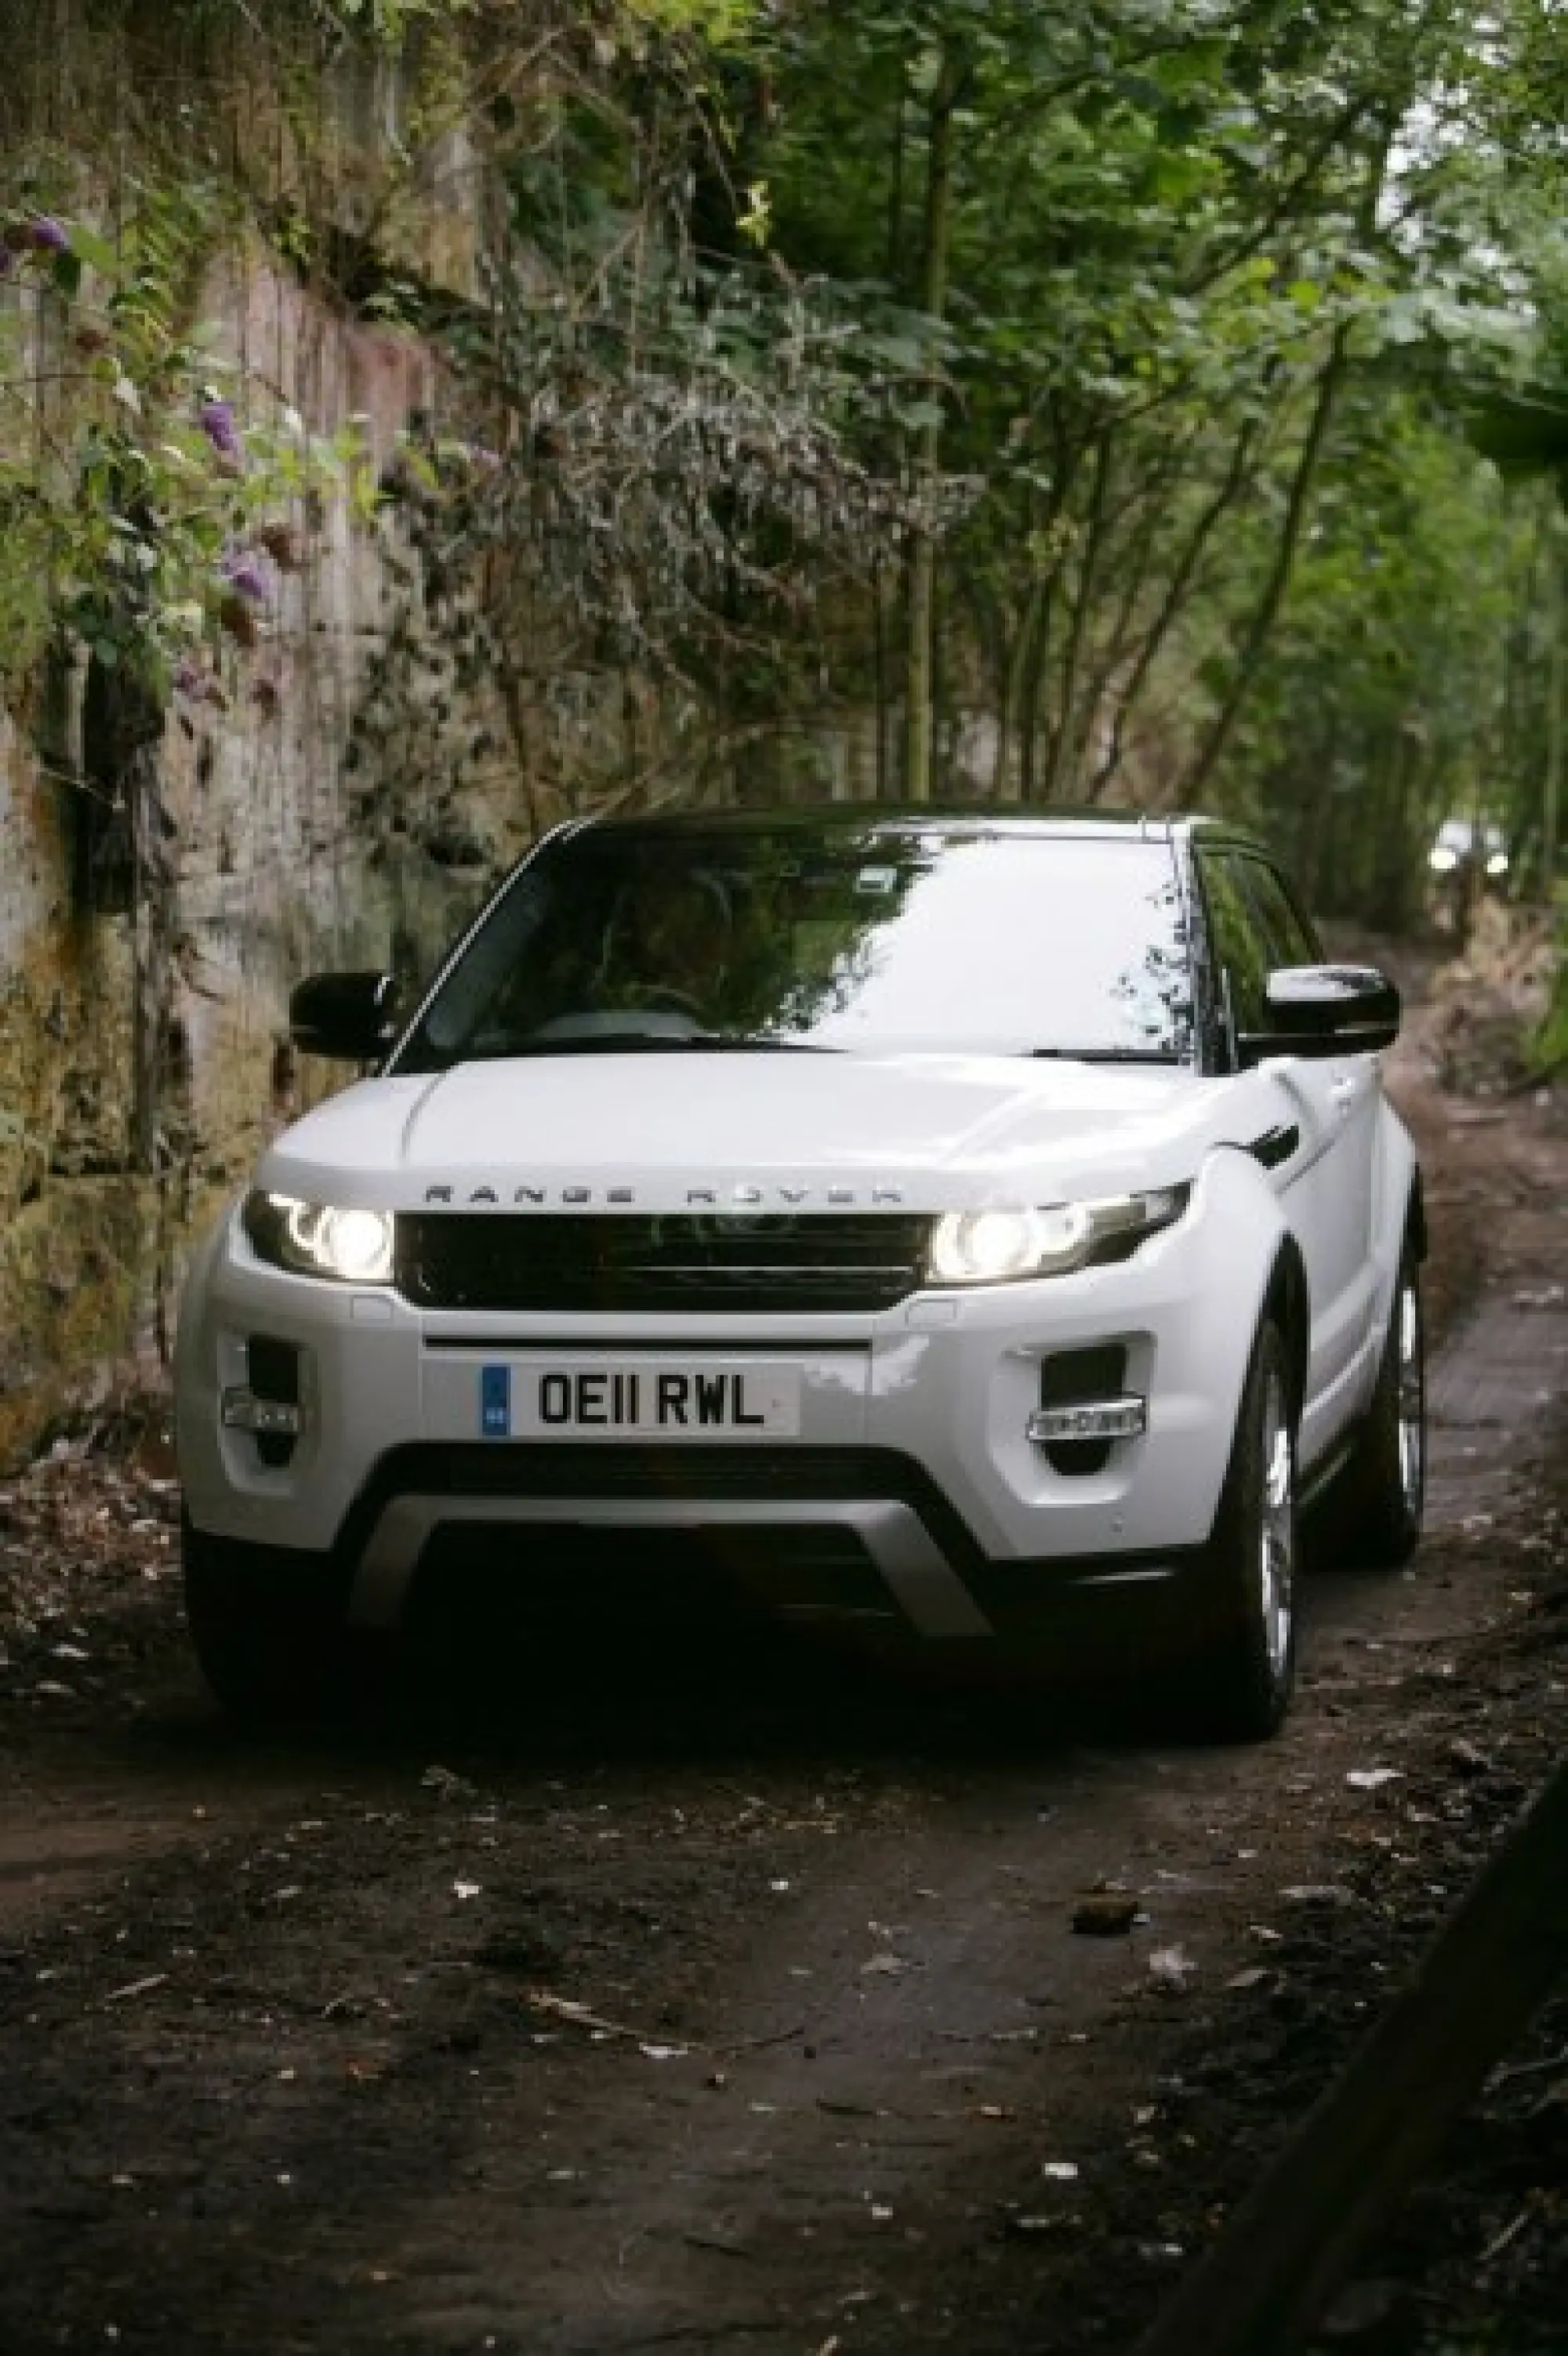 Land Rover Range Rover Evoque nuove foto ufficiali - 165